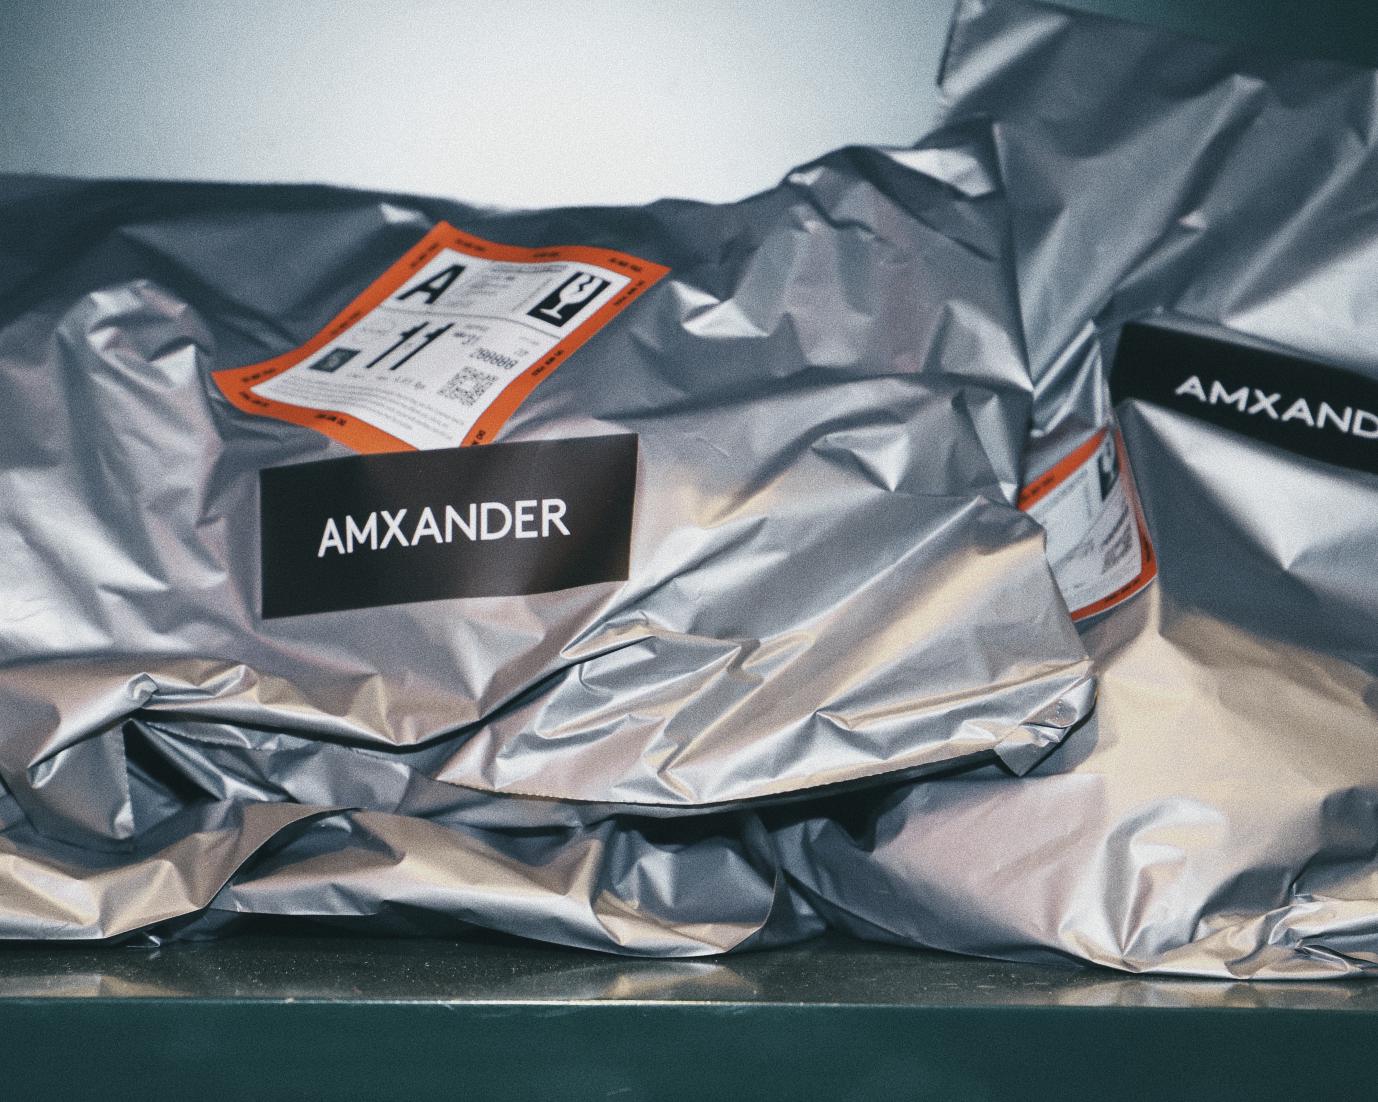 澳大利亚男装品牌AMXANDER拥抱市场春天 ——WAVE showroom 独家访谈AMXANDER设计师